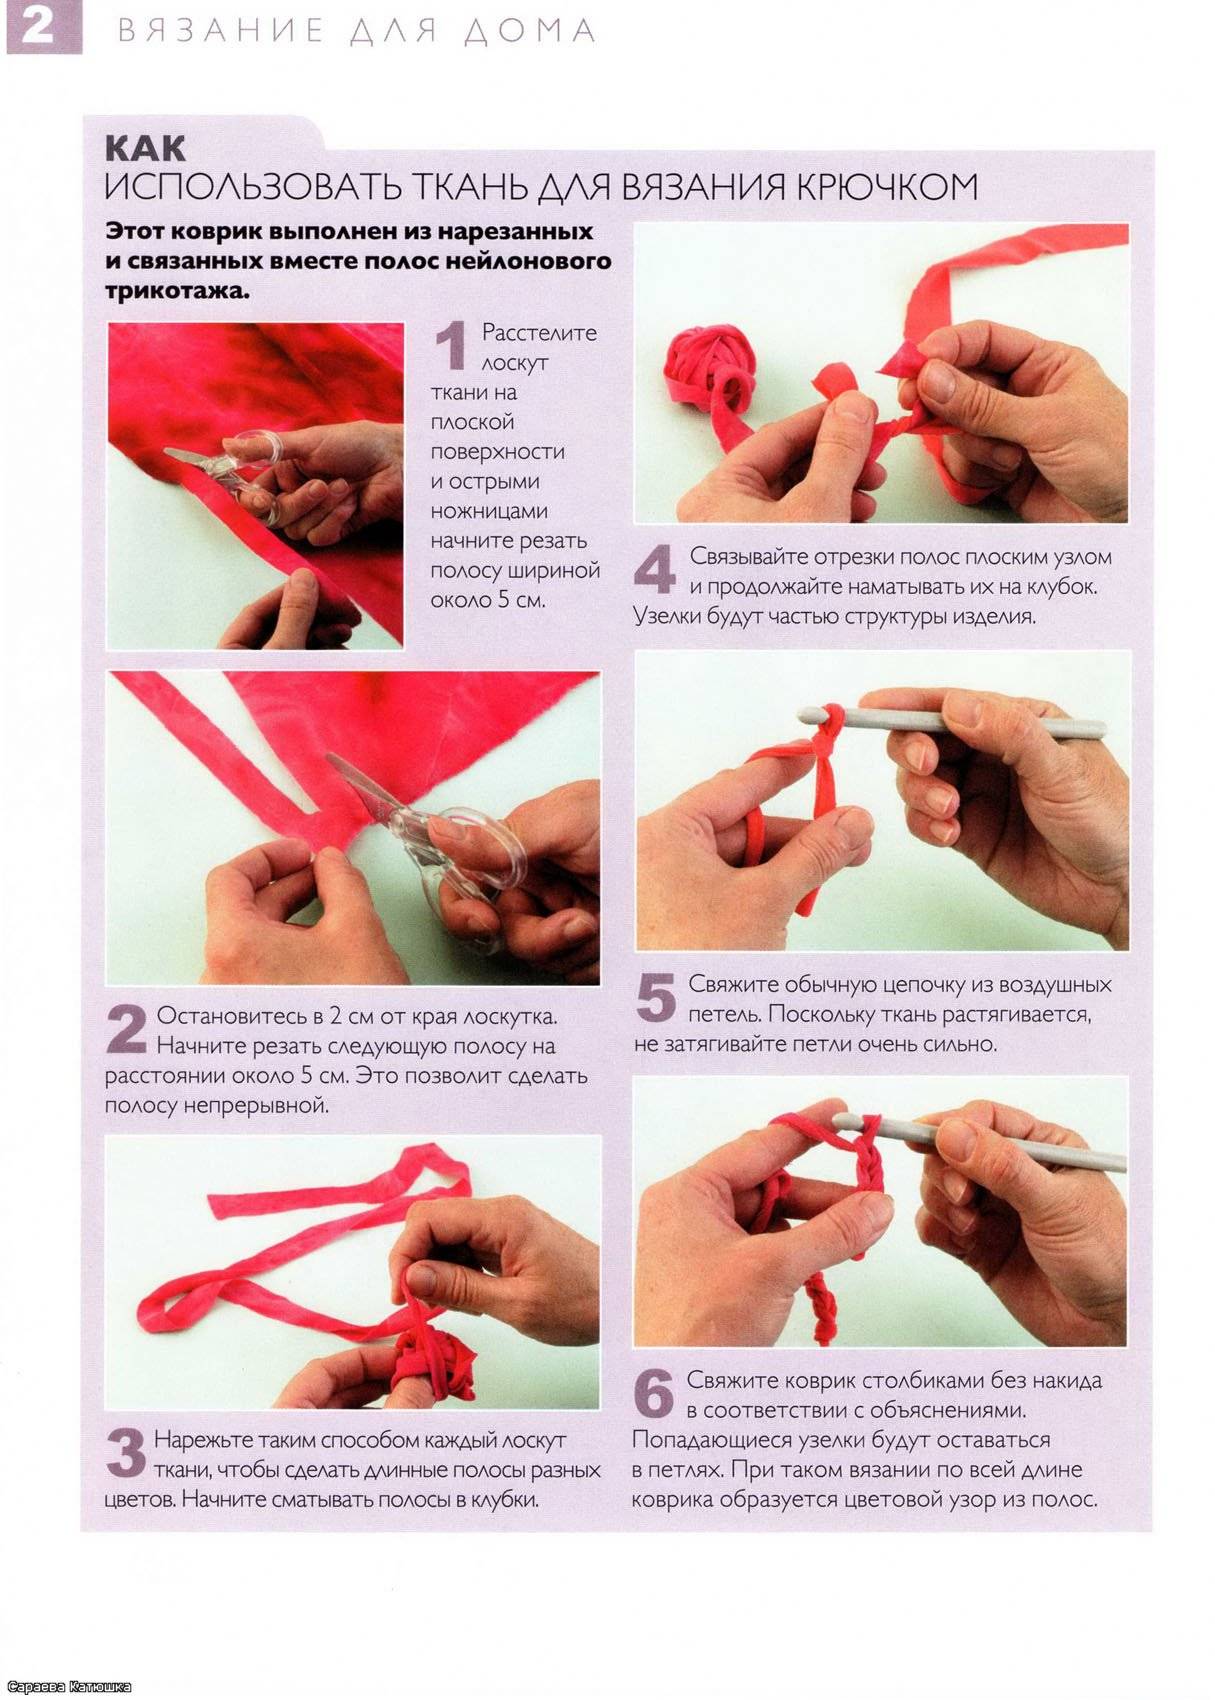 Как вязать крючком кружки из тряпок: описание, пошаговая инструкция выполнения работы и техника вязания - handskill.ru